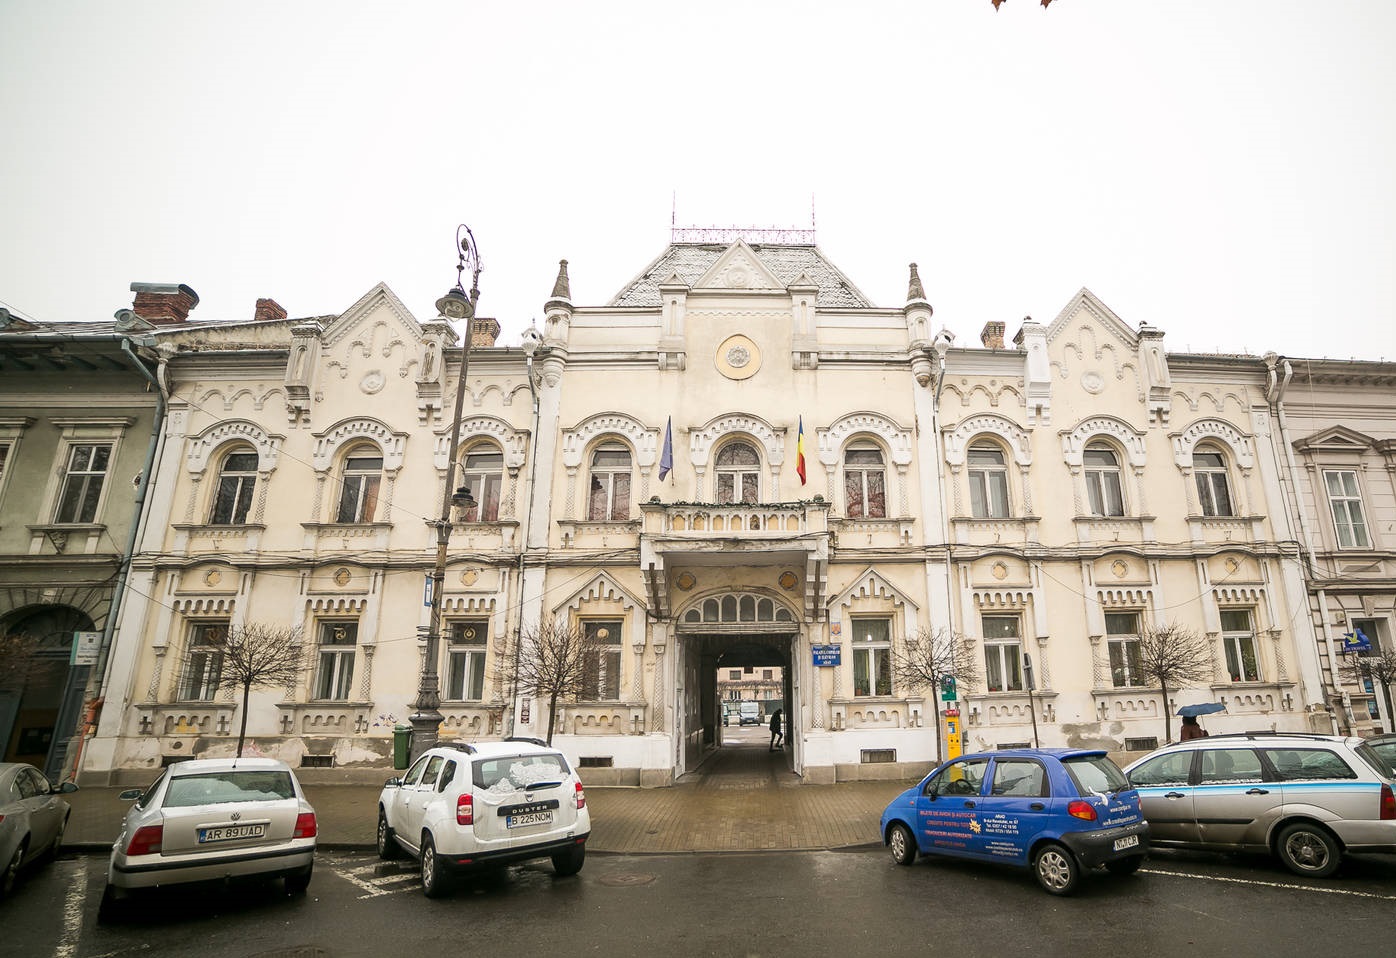 Cât trebuie să plătești pentru a deveni proprietarul Palatului Copiilor din Arad? Se află la doi pași de primărie și cuprinde aproape 40 de camere